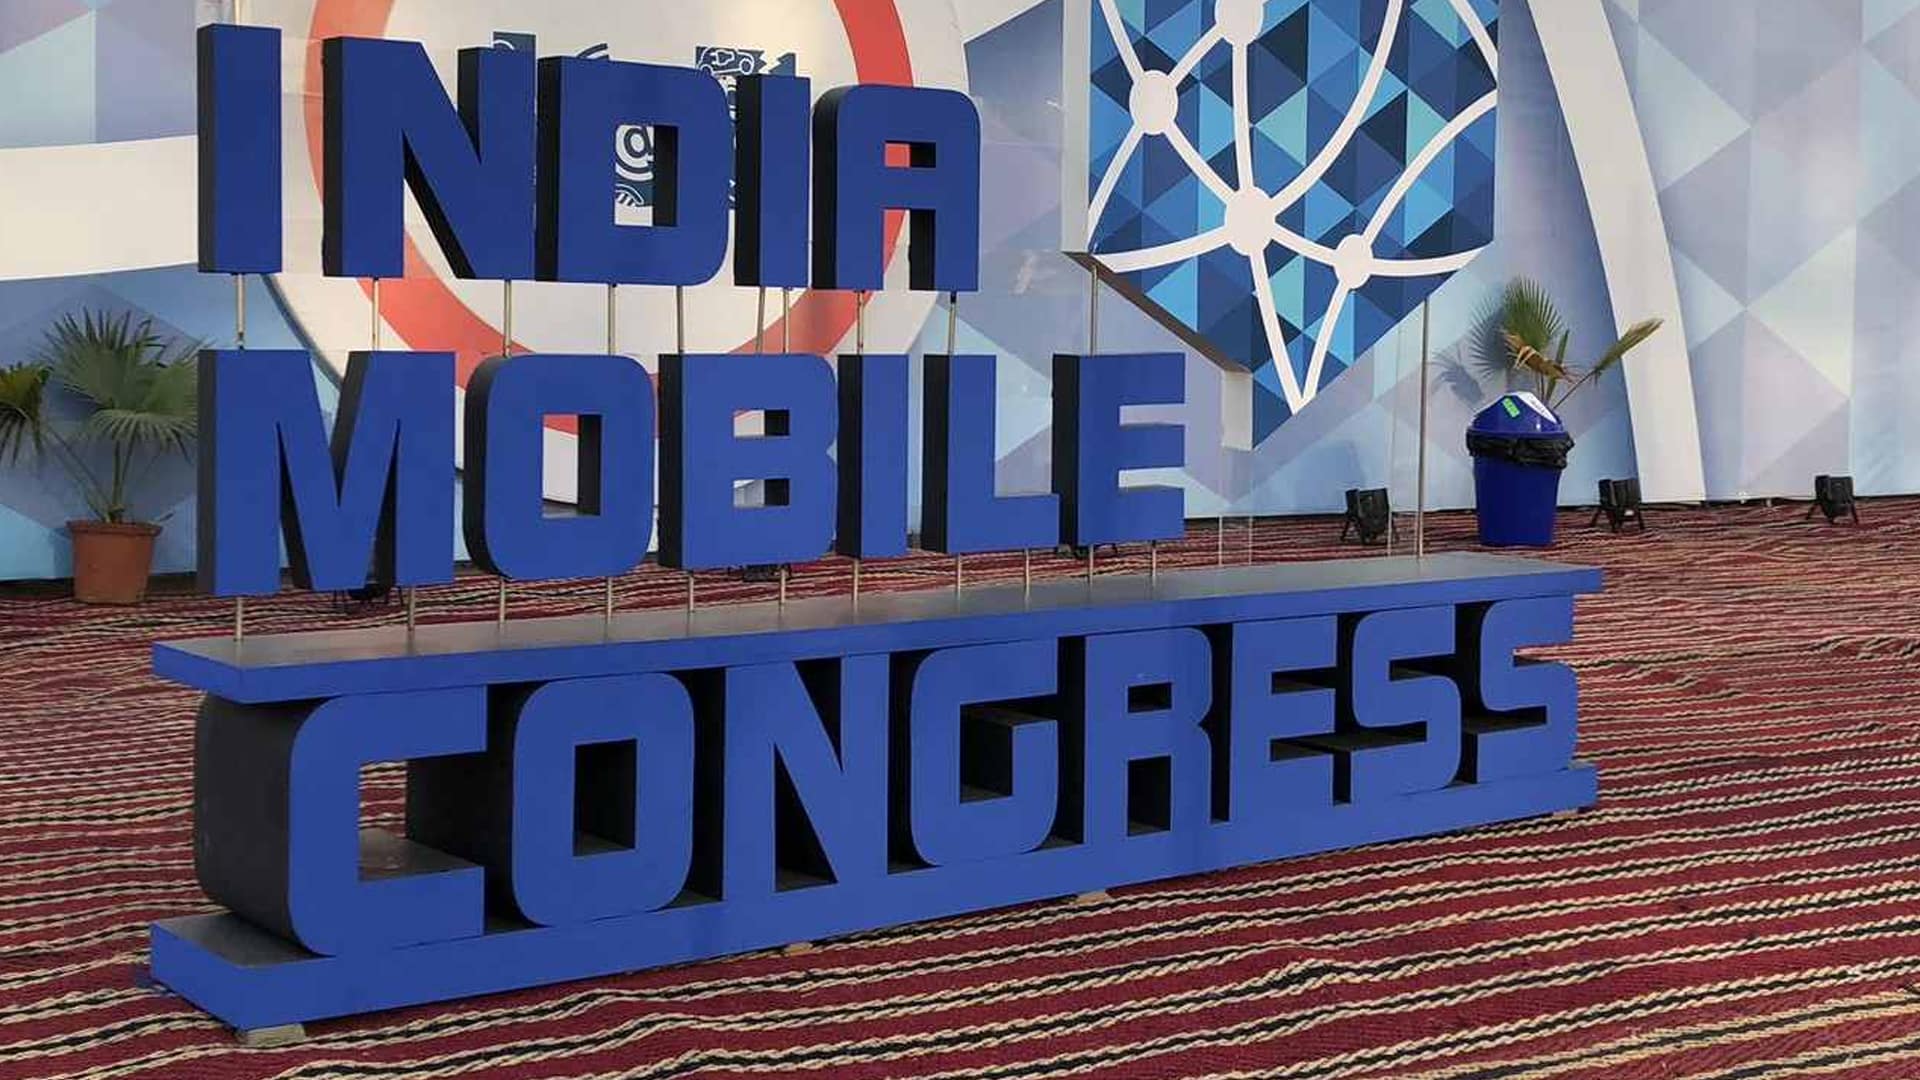 PM Modi to inaugurate India Mobile Congress